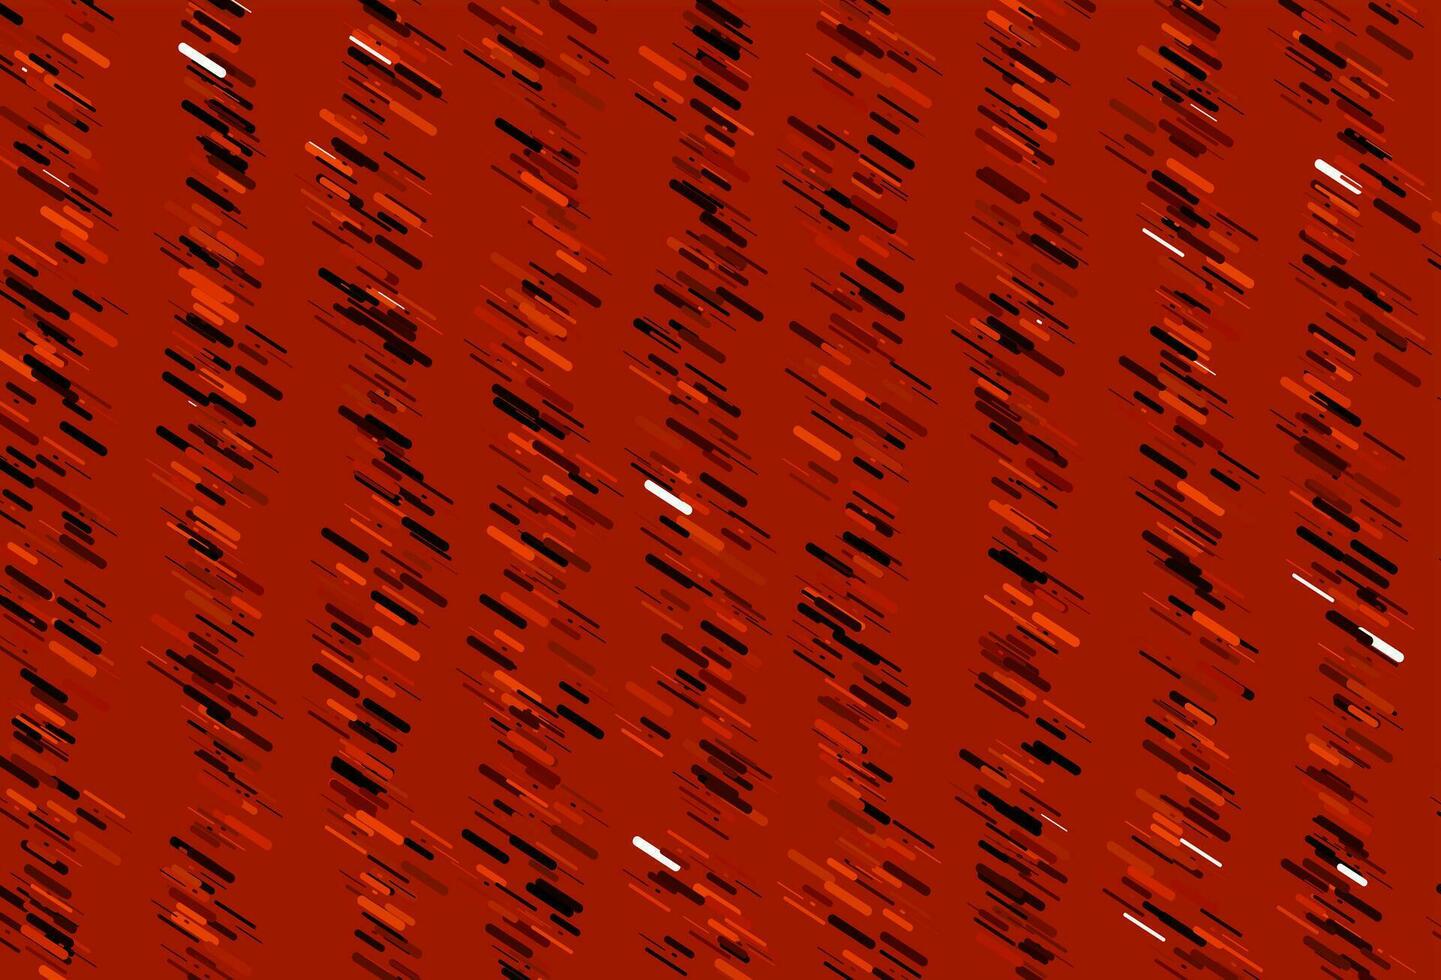 sfondo vettoriale rosso chiaro con linee rette.